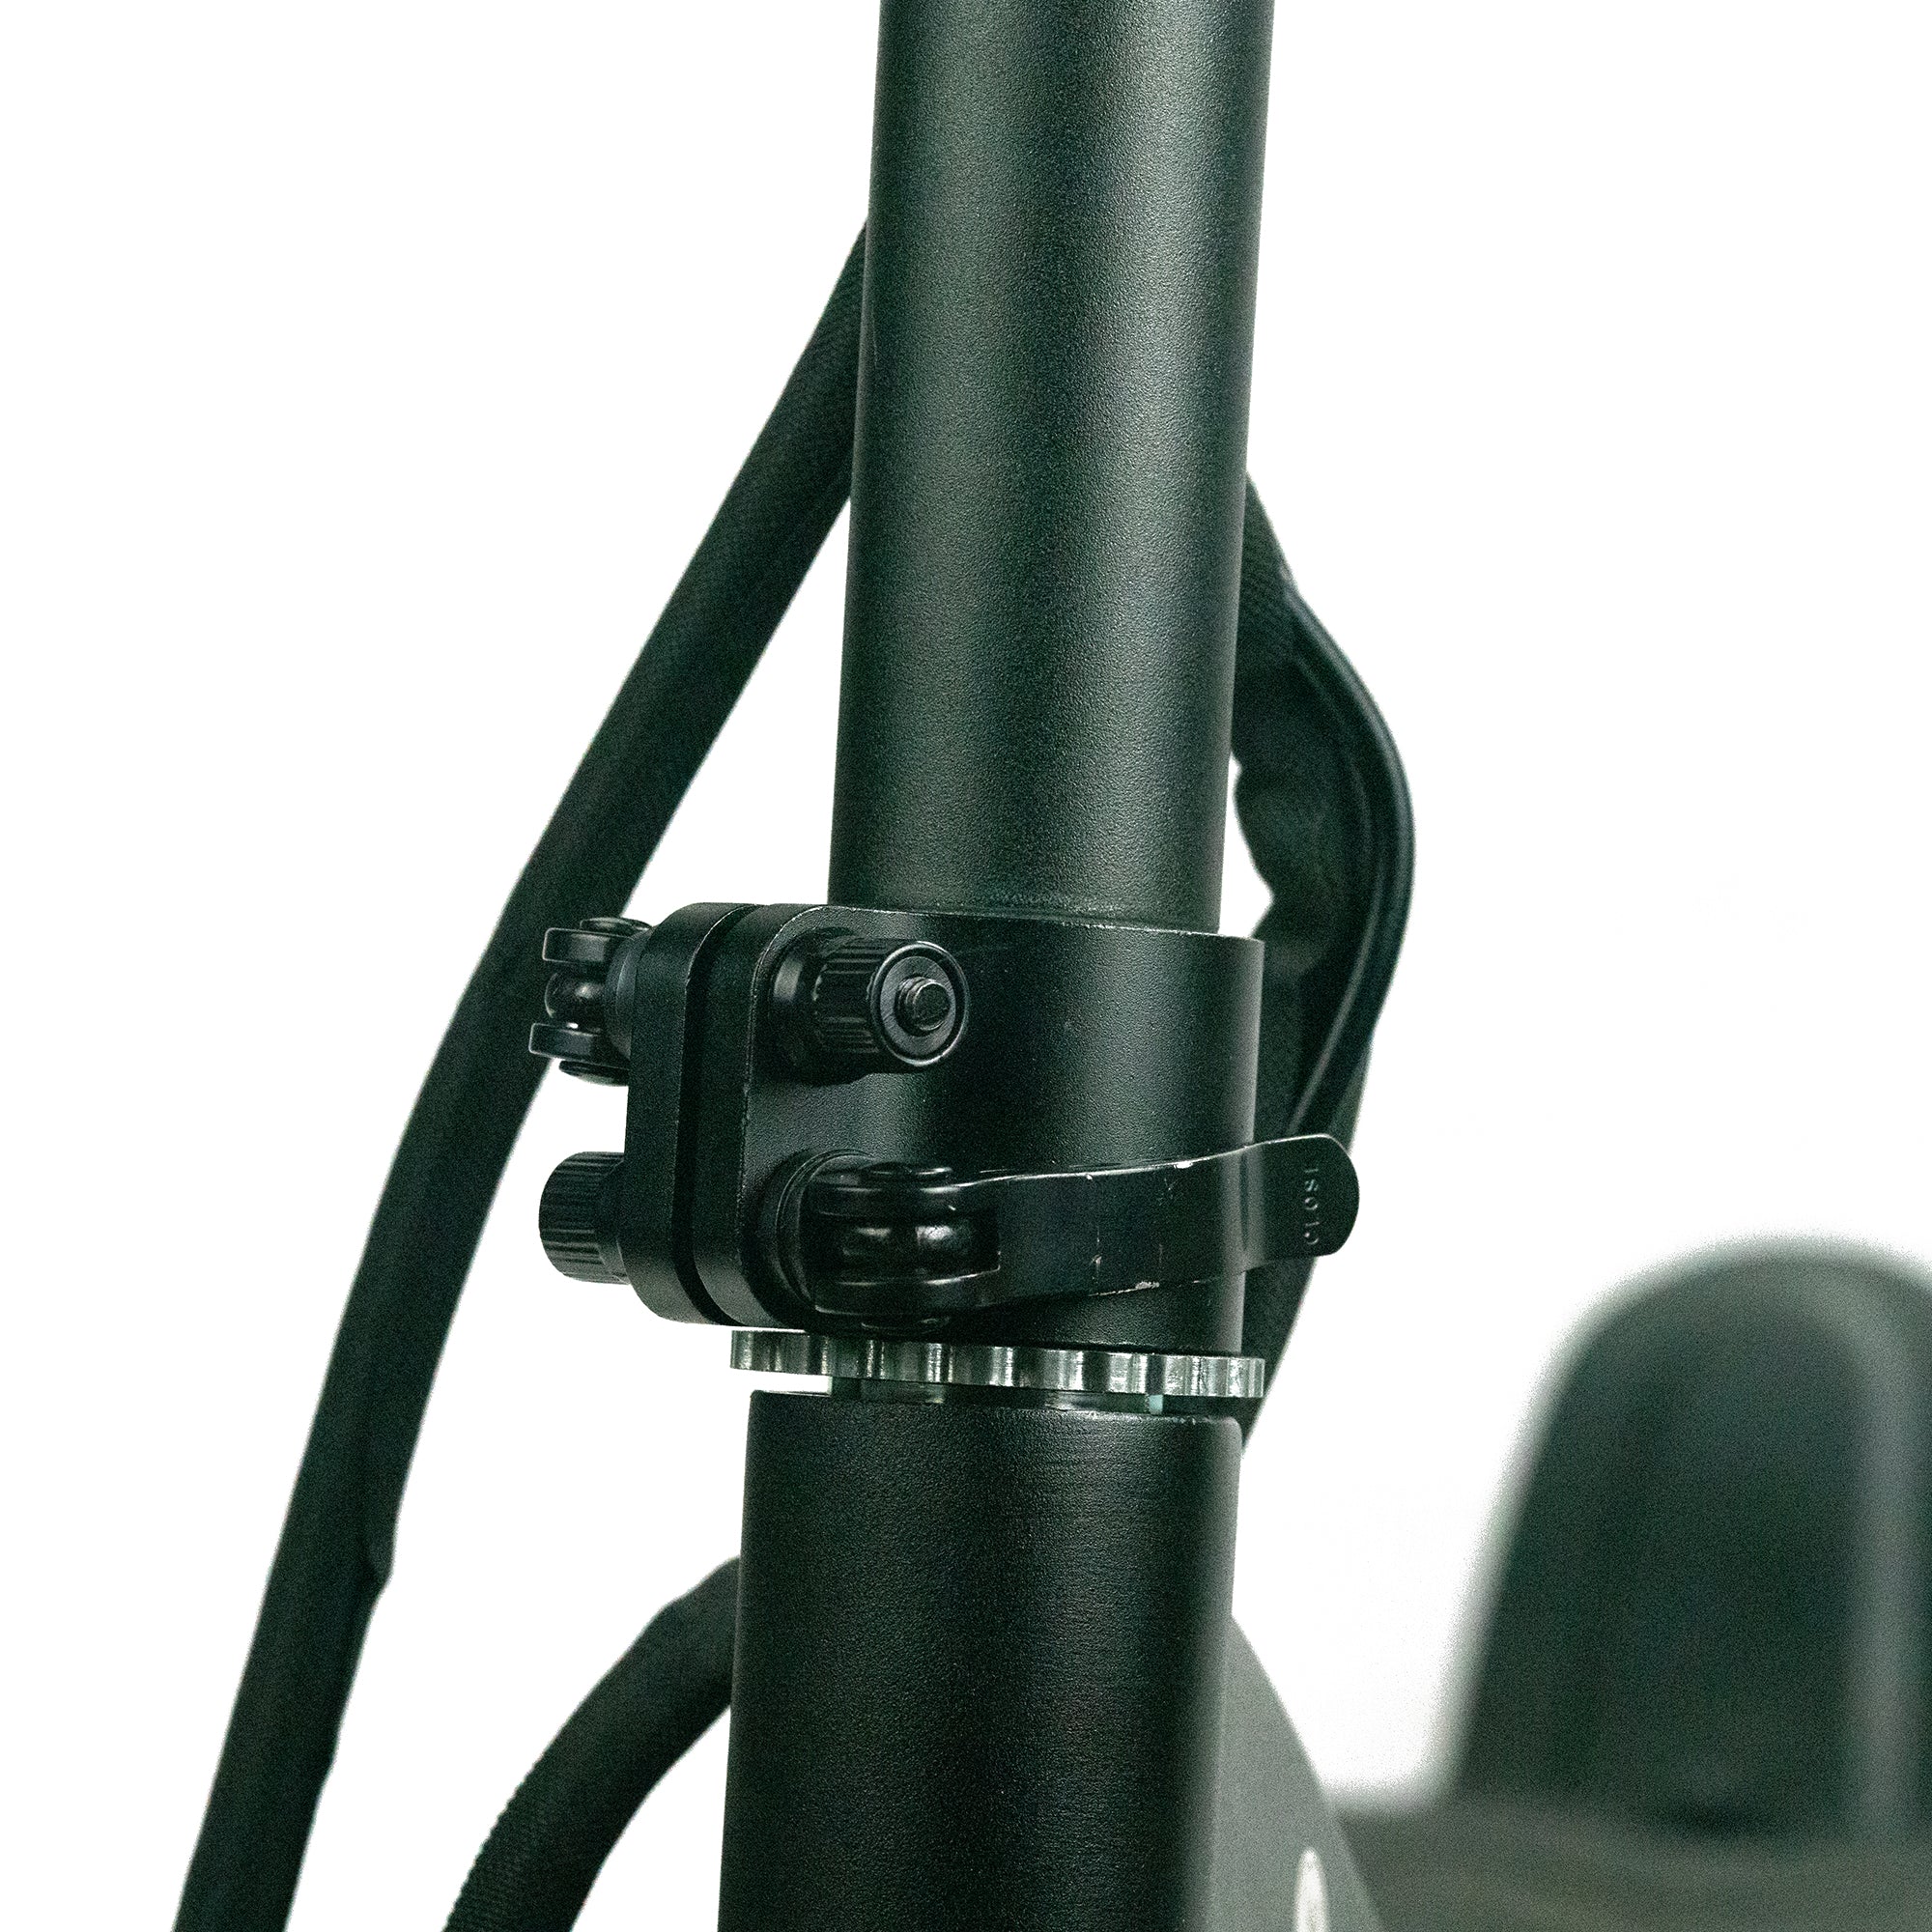 Motorrad Scheinwerfer Verkleidung Trigger-Lock Montage Clamp Kit